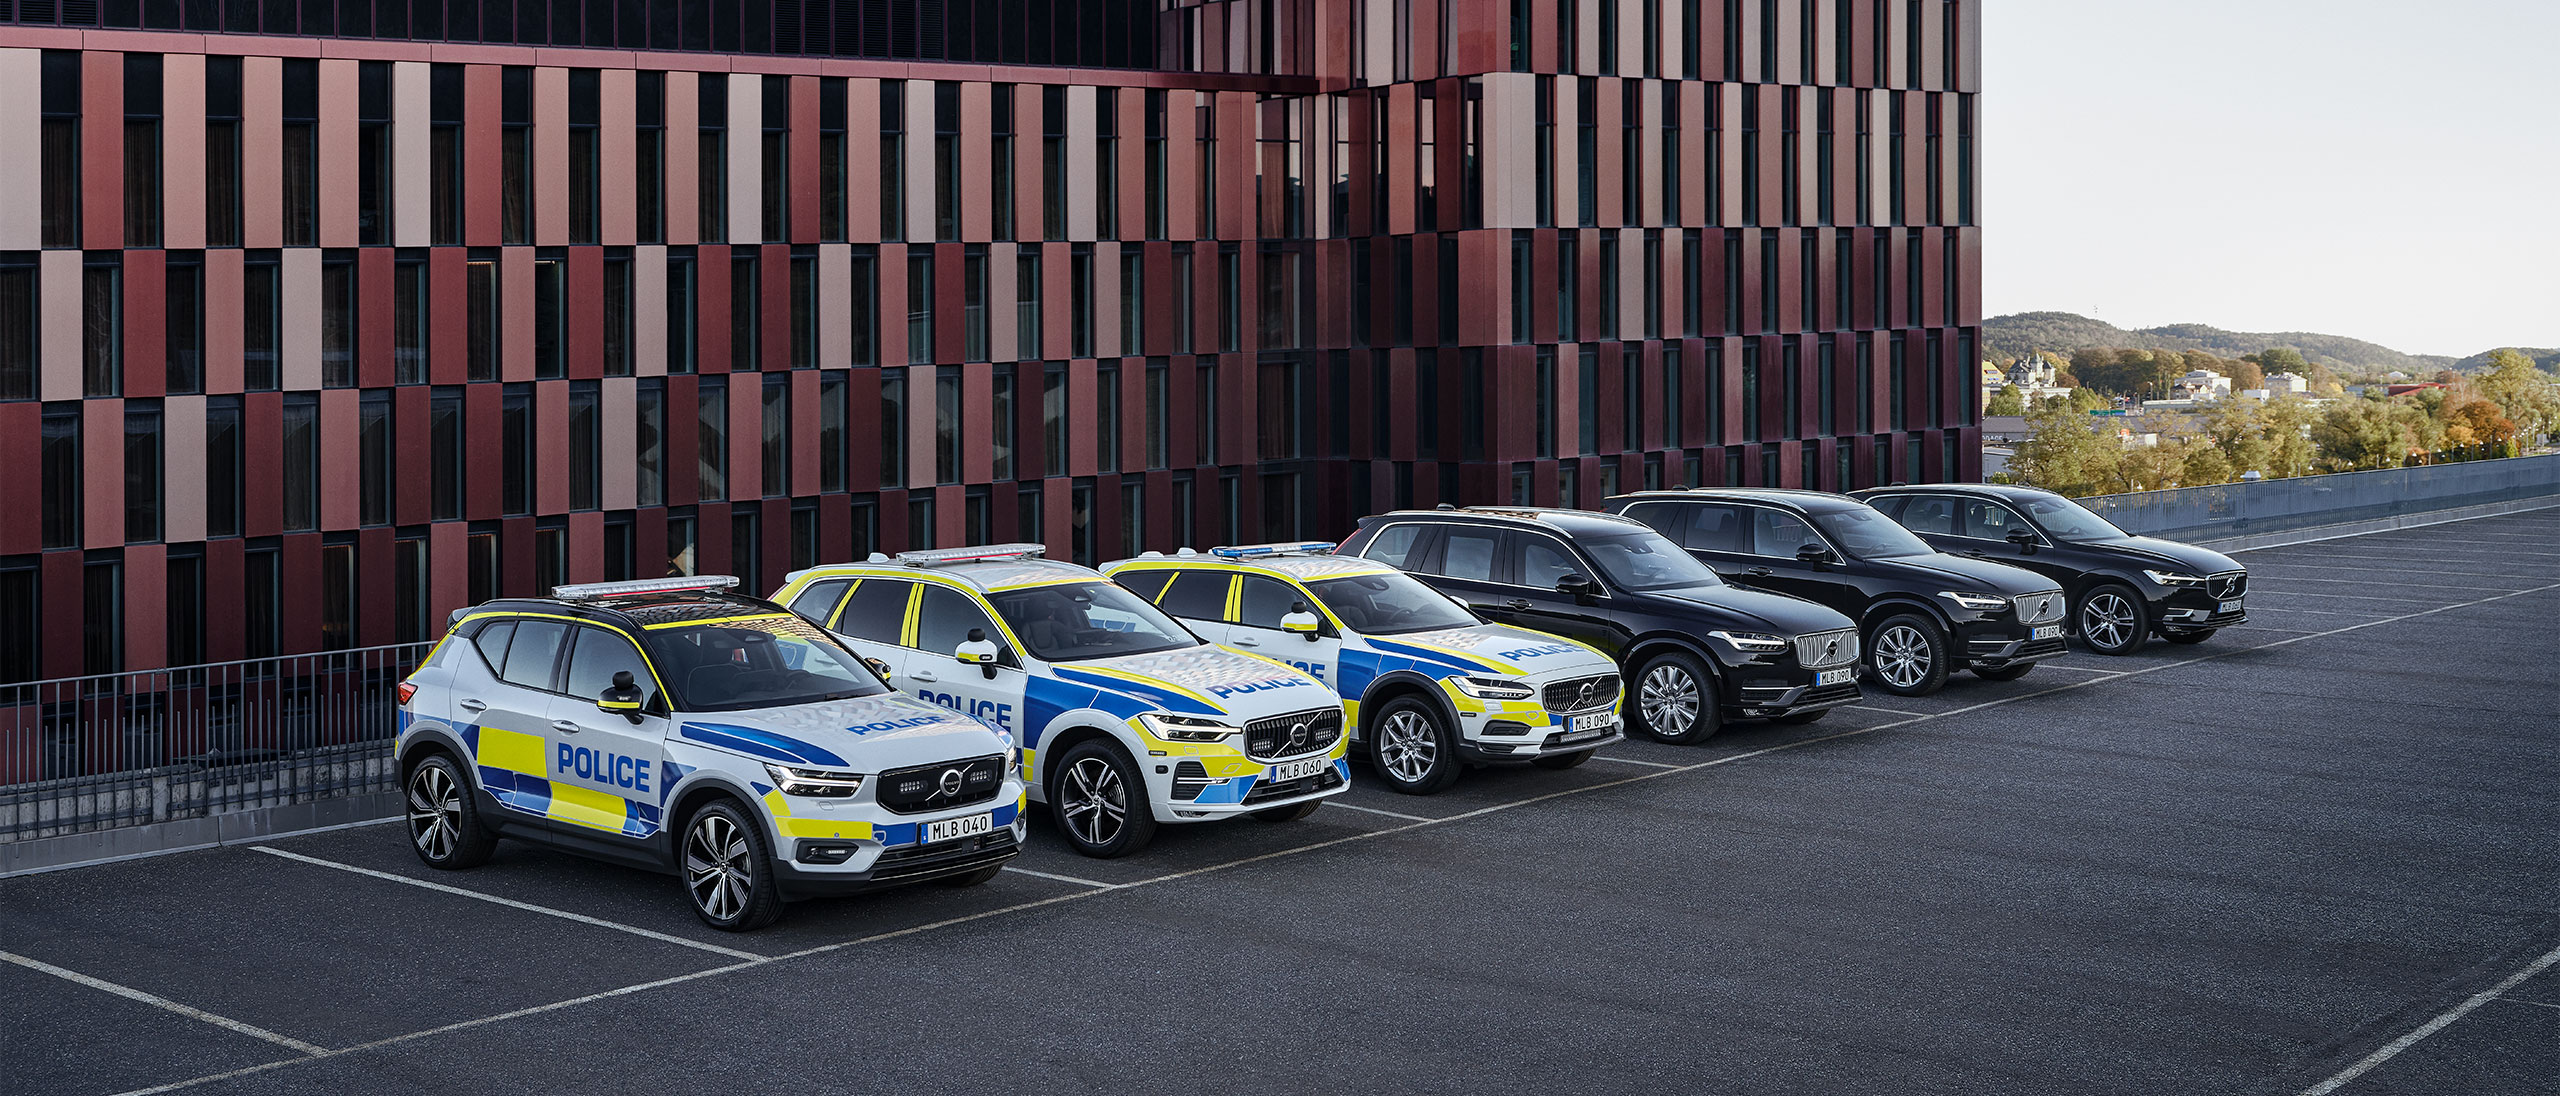 Drei Volvo-Polizeifahrzeuge und drei Volvo-SUVs, die ausserhalb eines Behördengebäudes geparkt sind